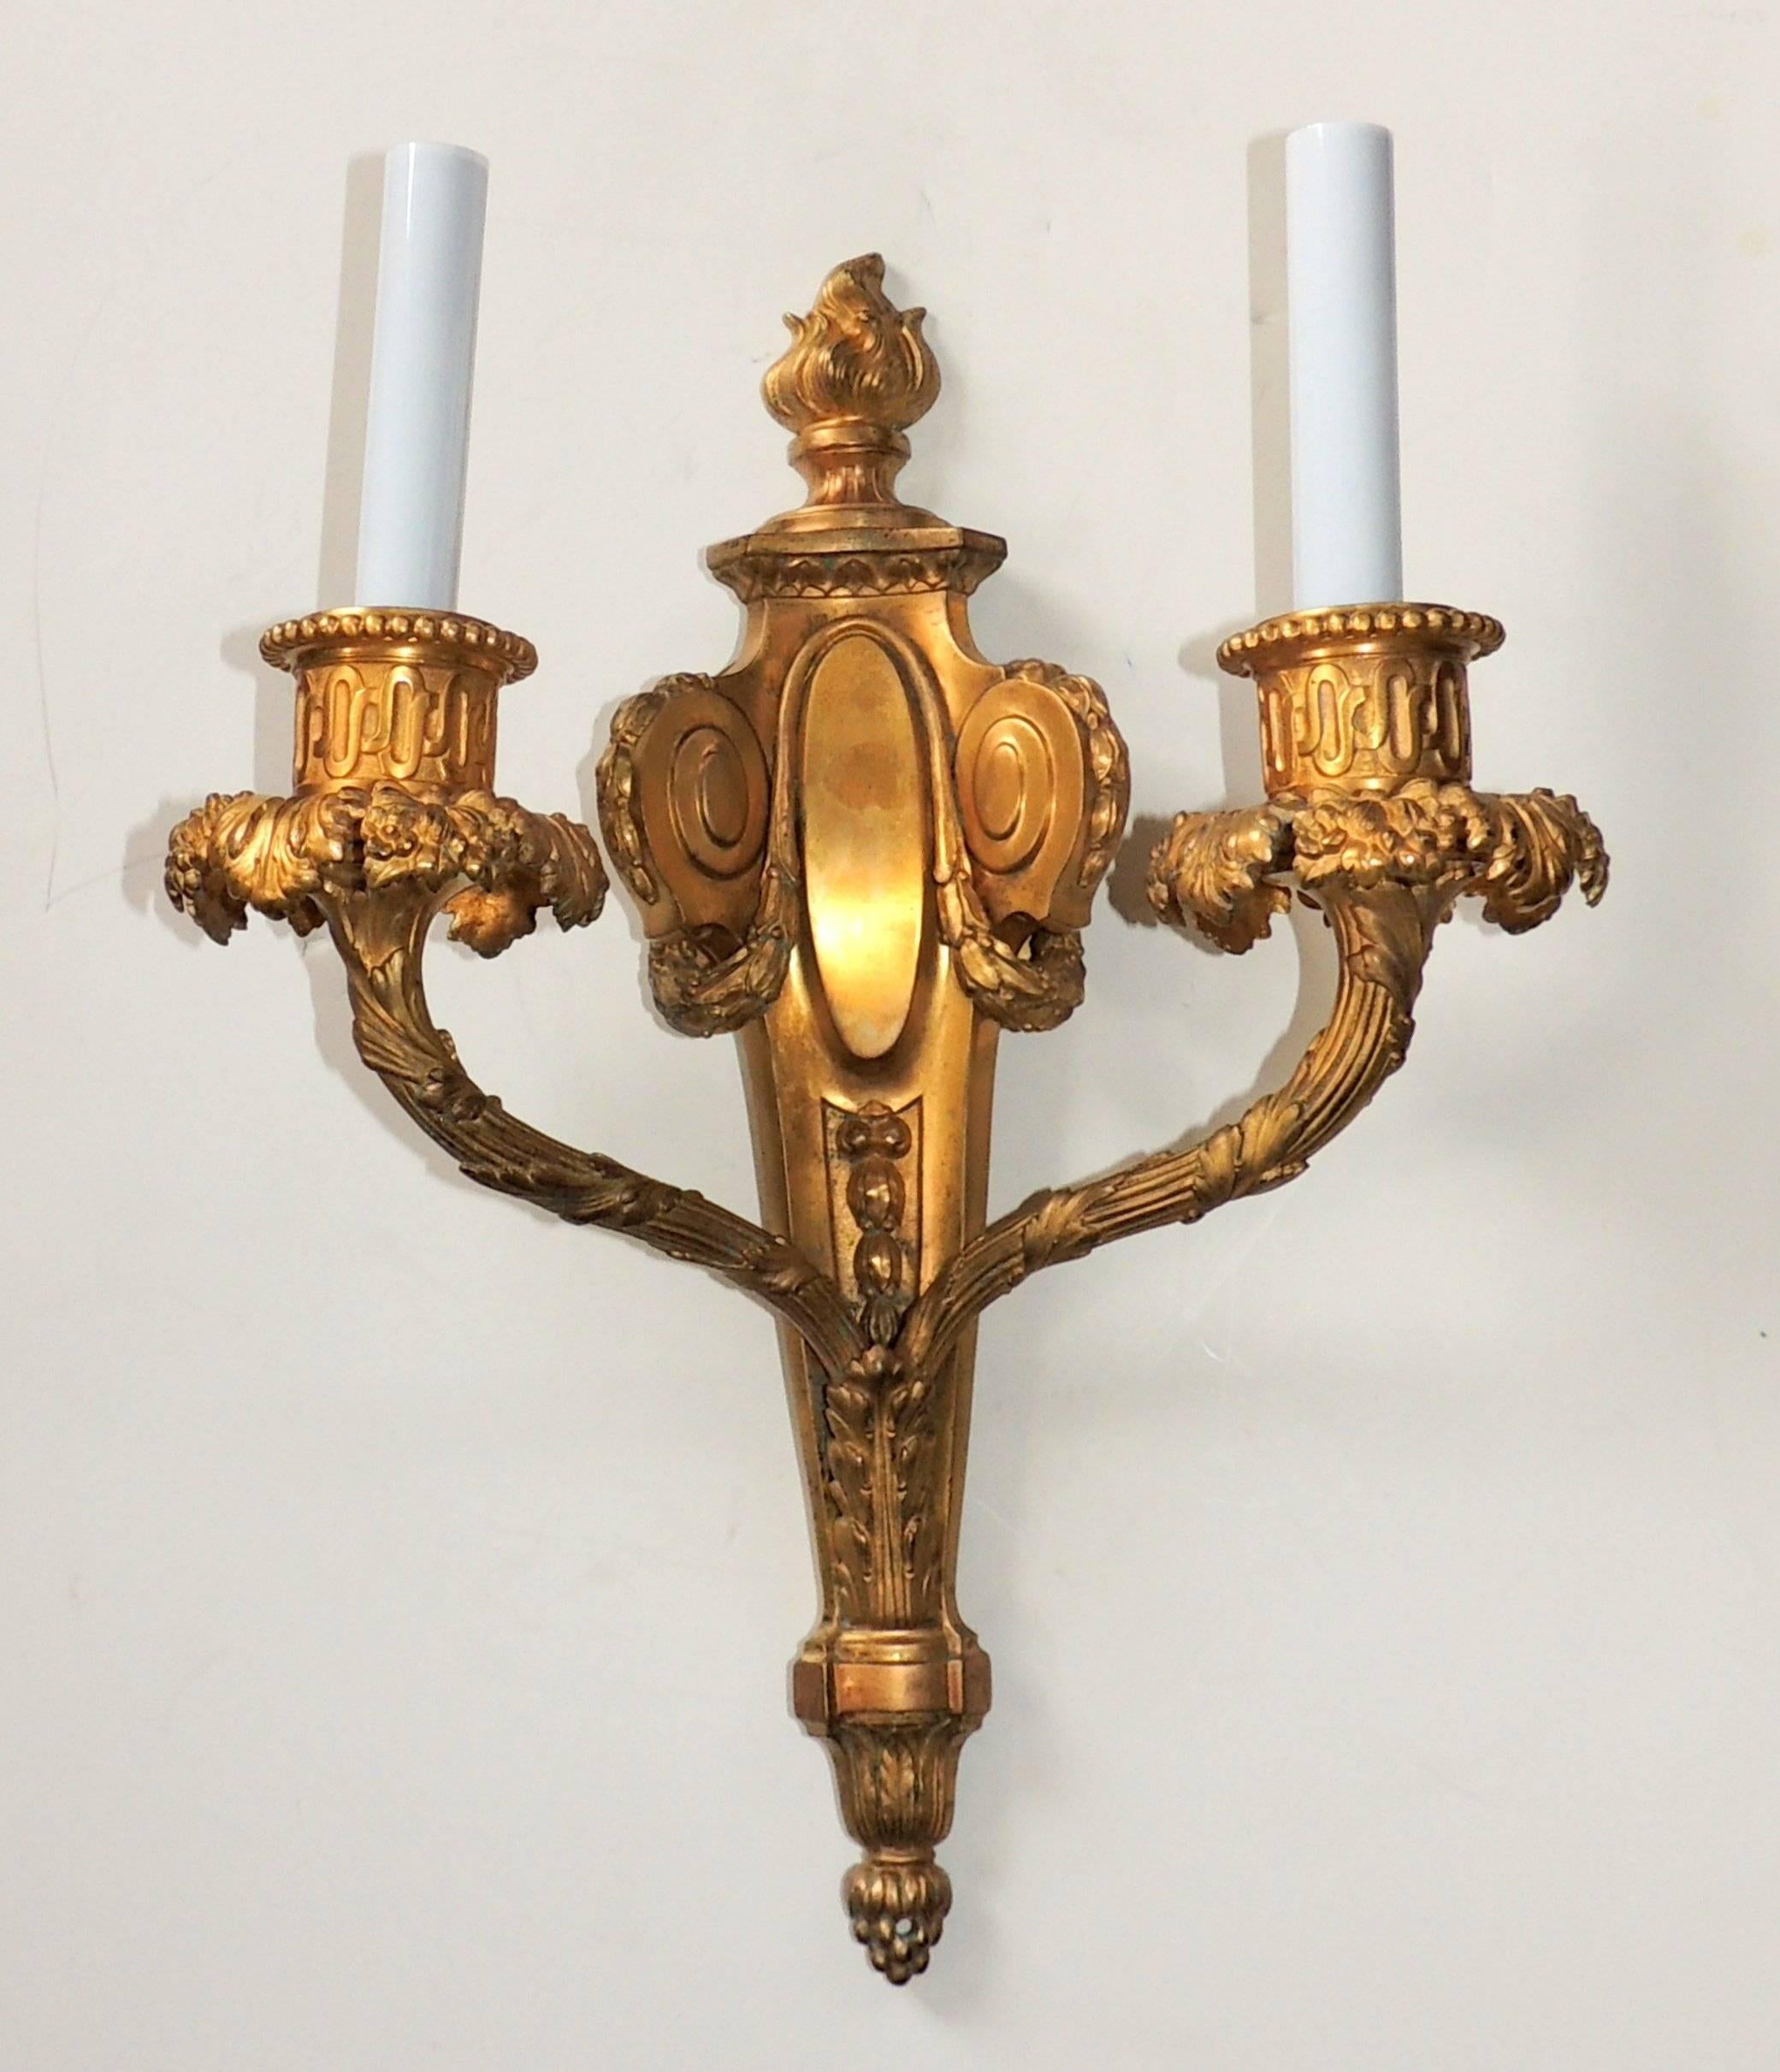 Exceptionnelle paire d'appliques néoclassiques à flamme en bronze doré.
Mesures : 16